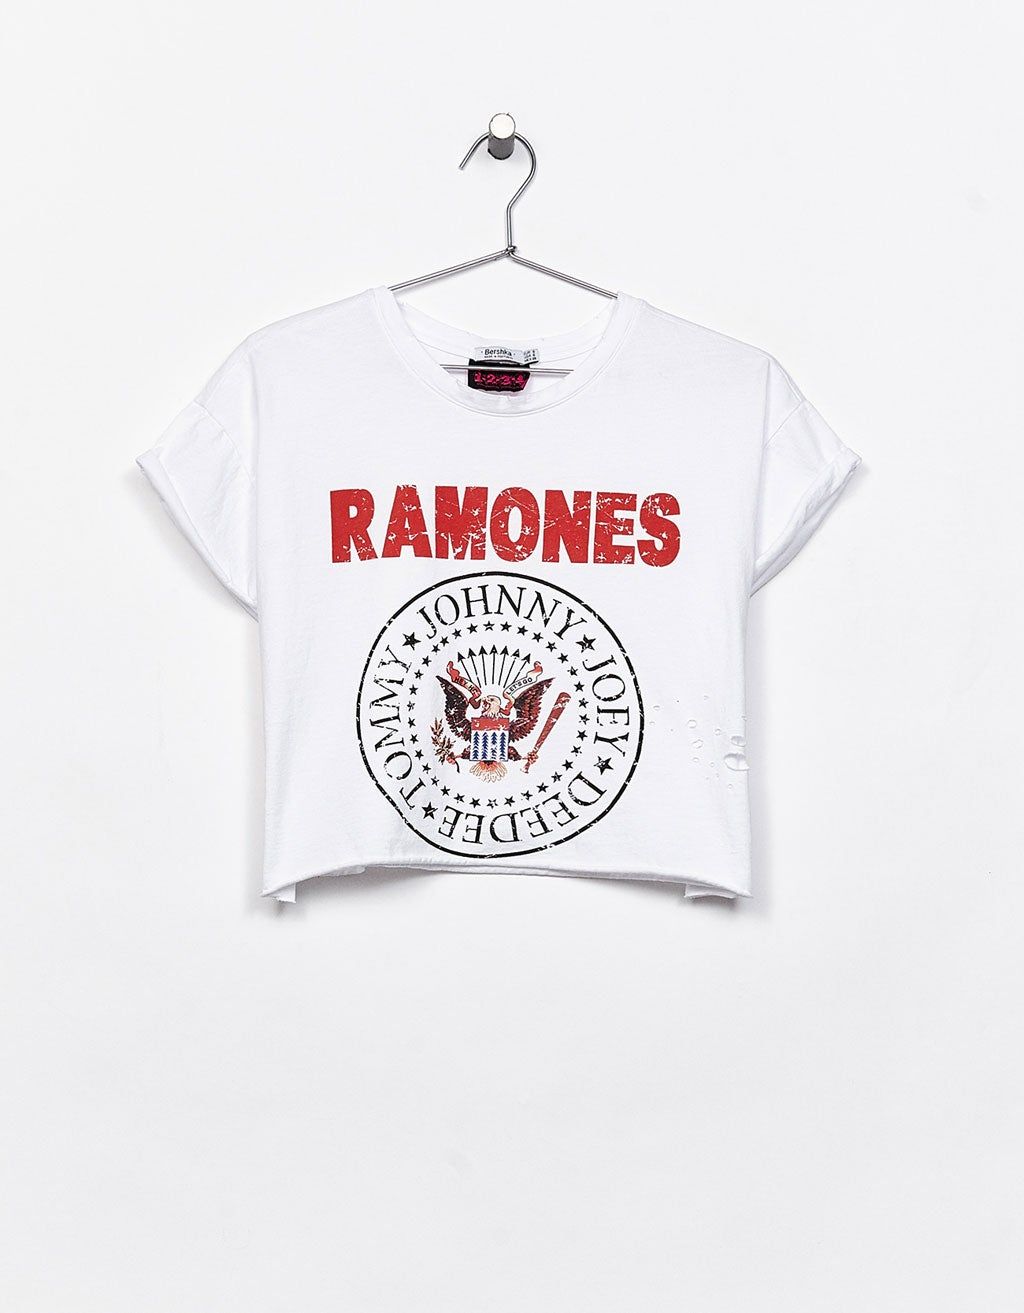 Inditex quiere volver a poner de moda la camiseta de los Ramones - Stilo